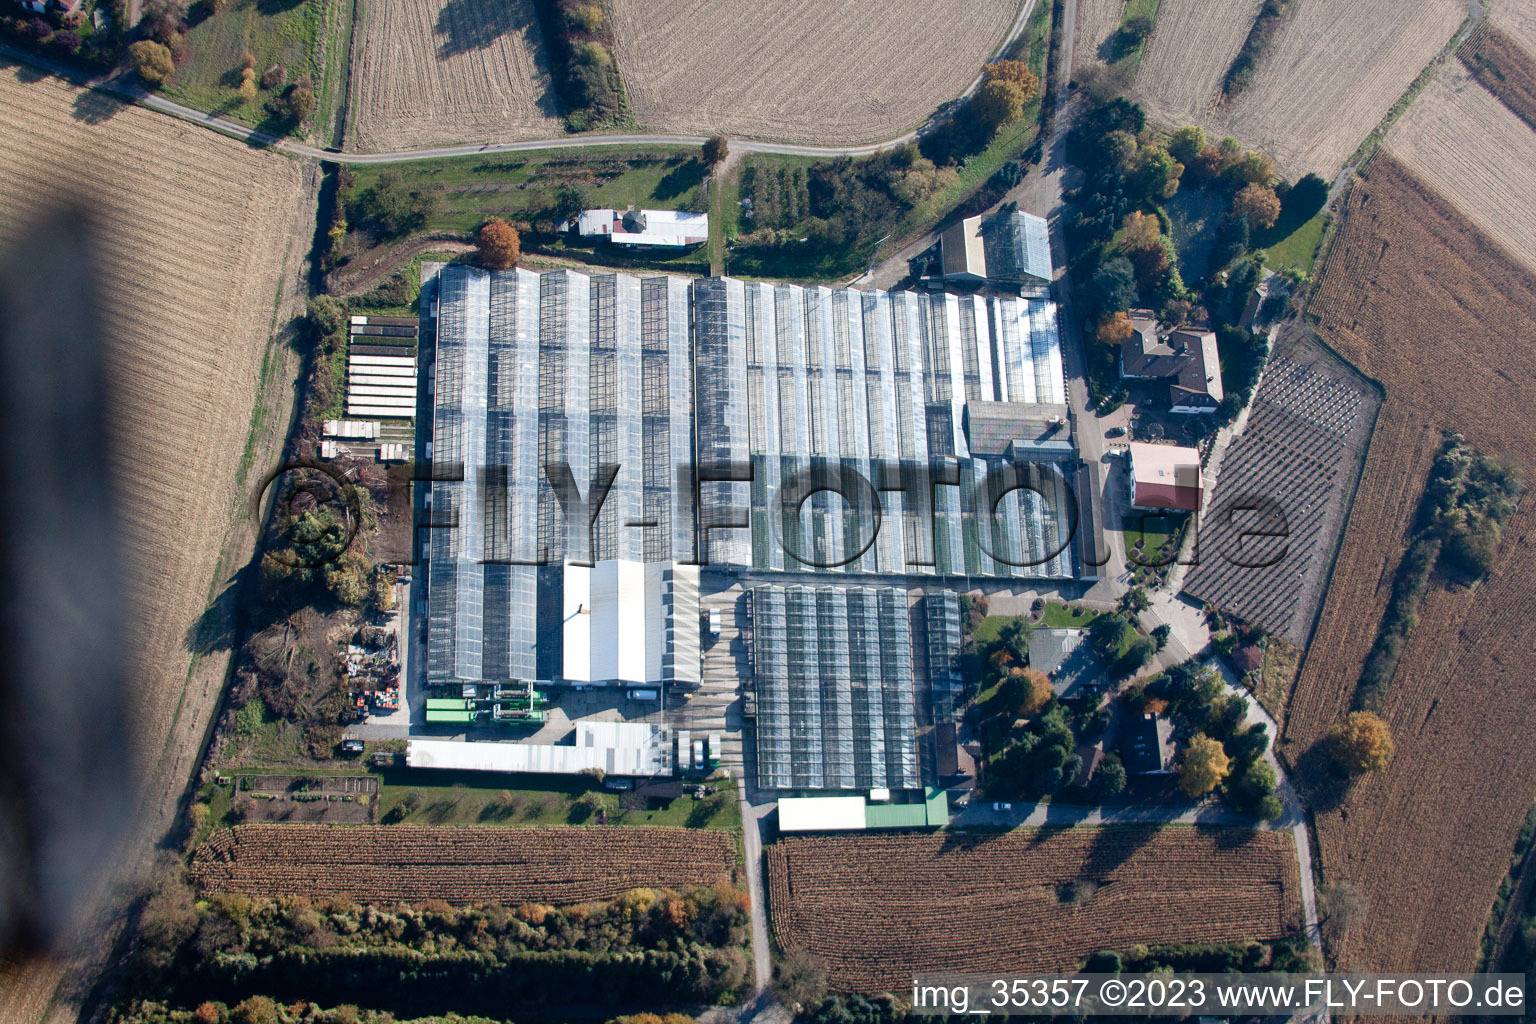 Hagenbach, Geranien Endisch GmbH im Bundesland Rheinland-Pfalz, Deutschland aus der Luft betrachtet